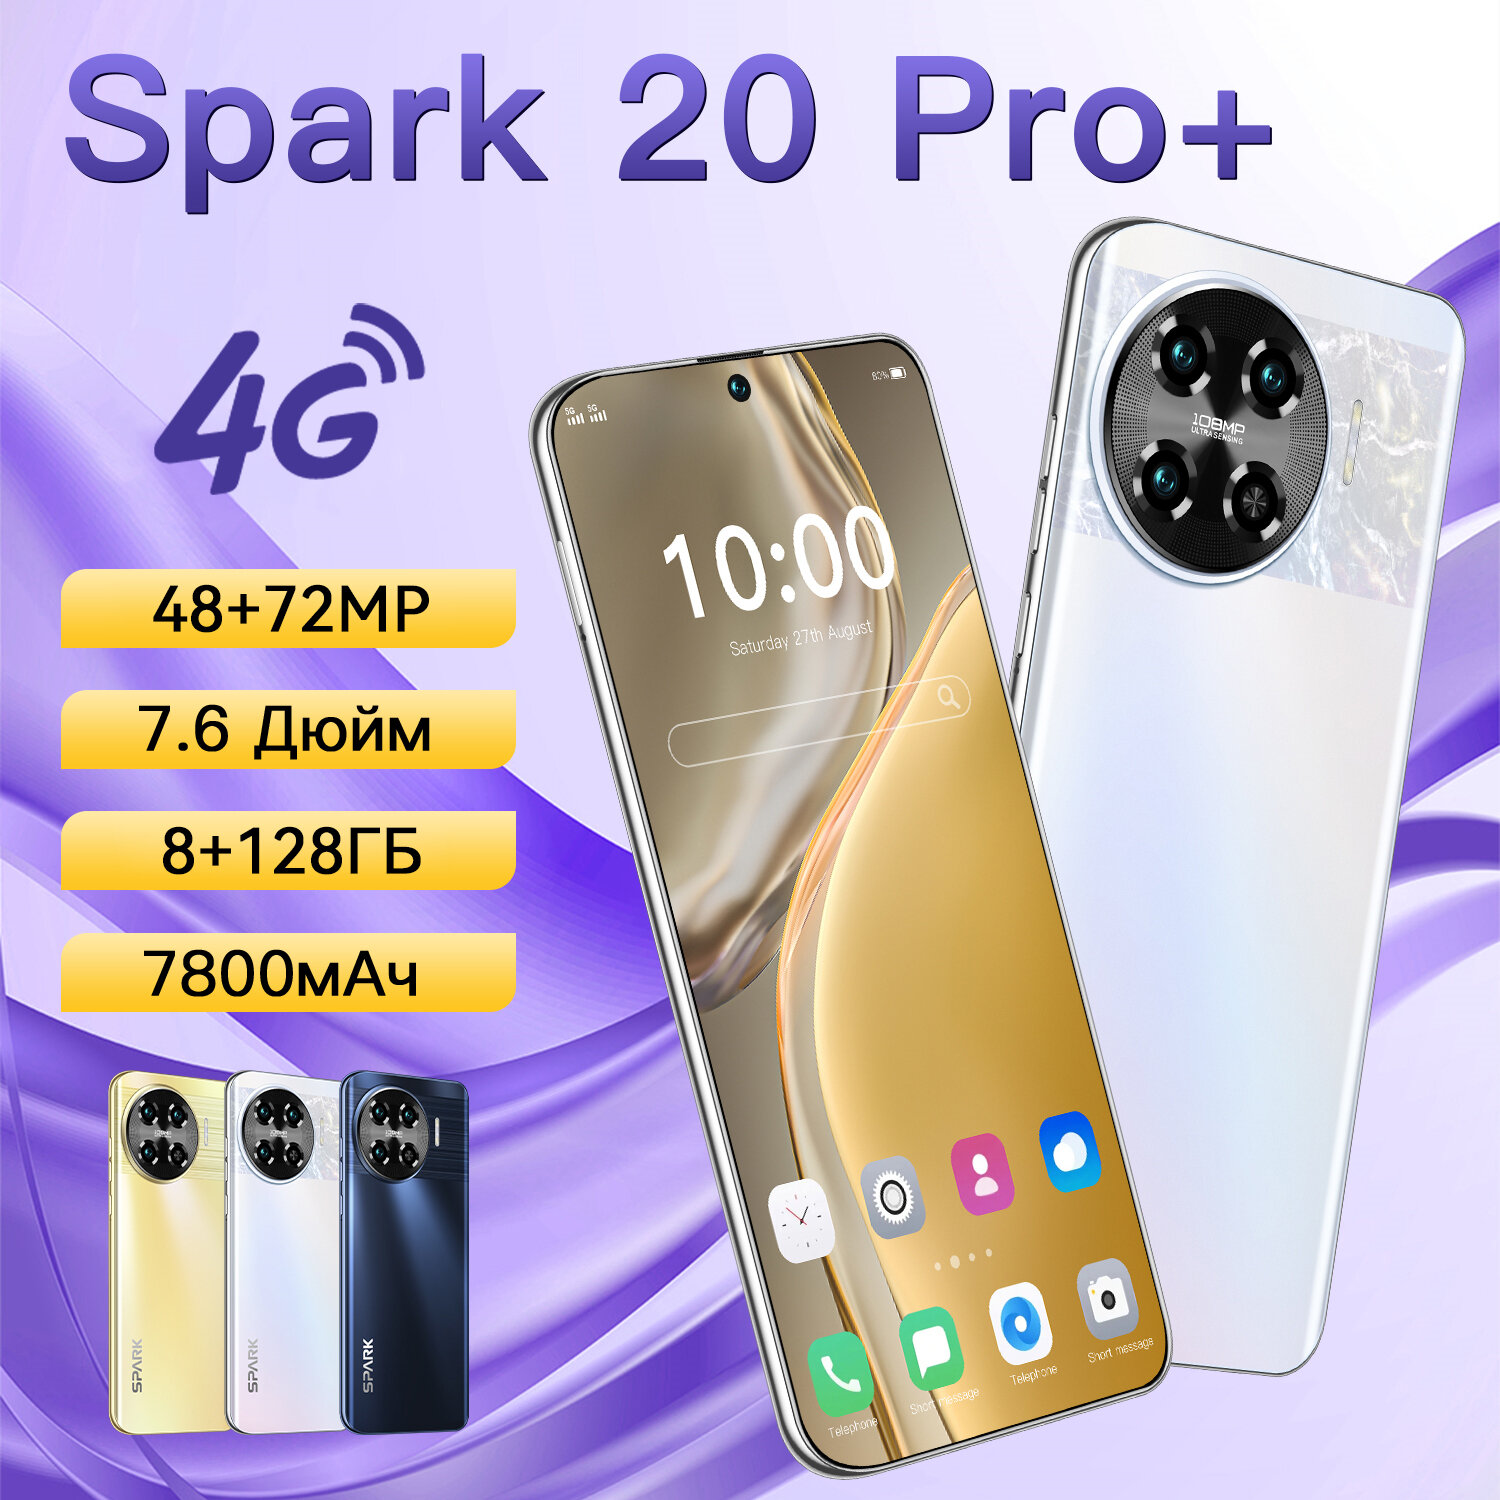 Cмартфон ZUNYI Spark 20 Pro + 4G с 7,6-дюймовым экраном ultimate edition поддерживает мобильные телефоны с поддержкой Google Play, игр и развлечений,8 Г + 128 г, белое